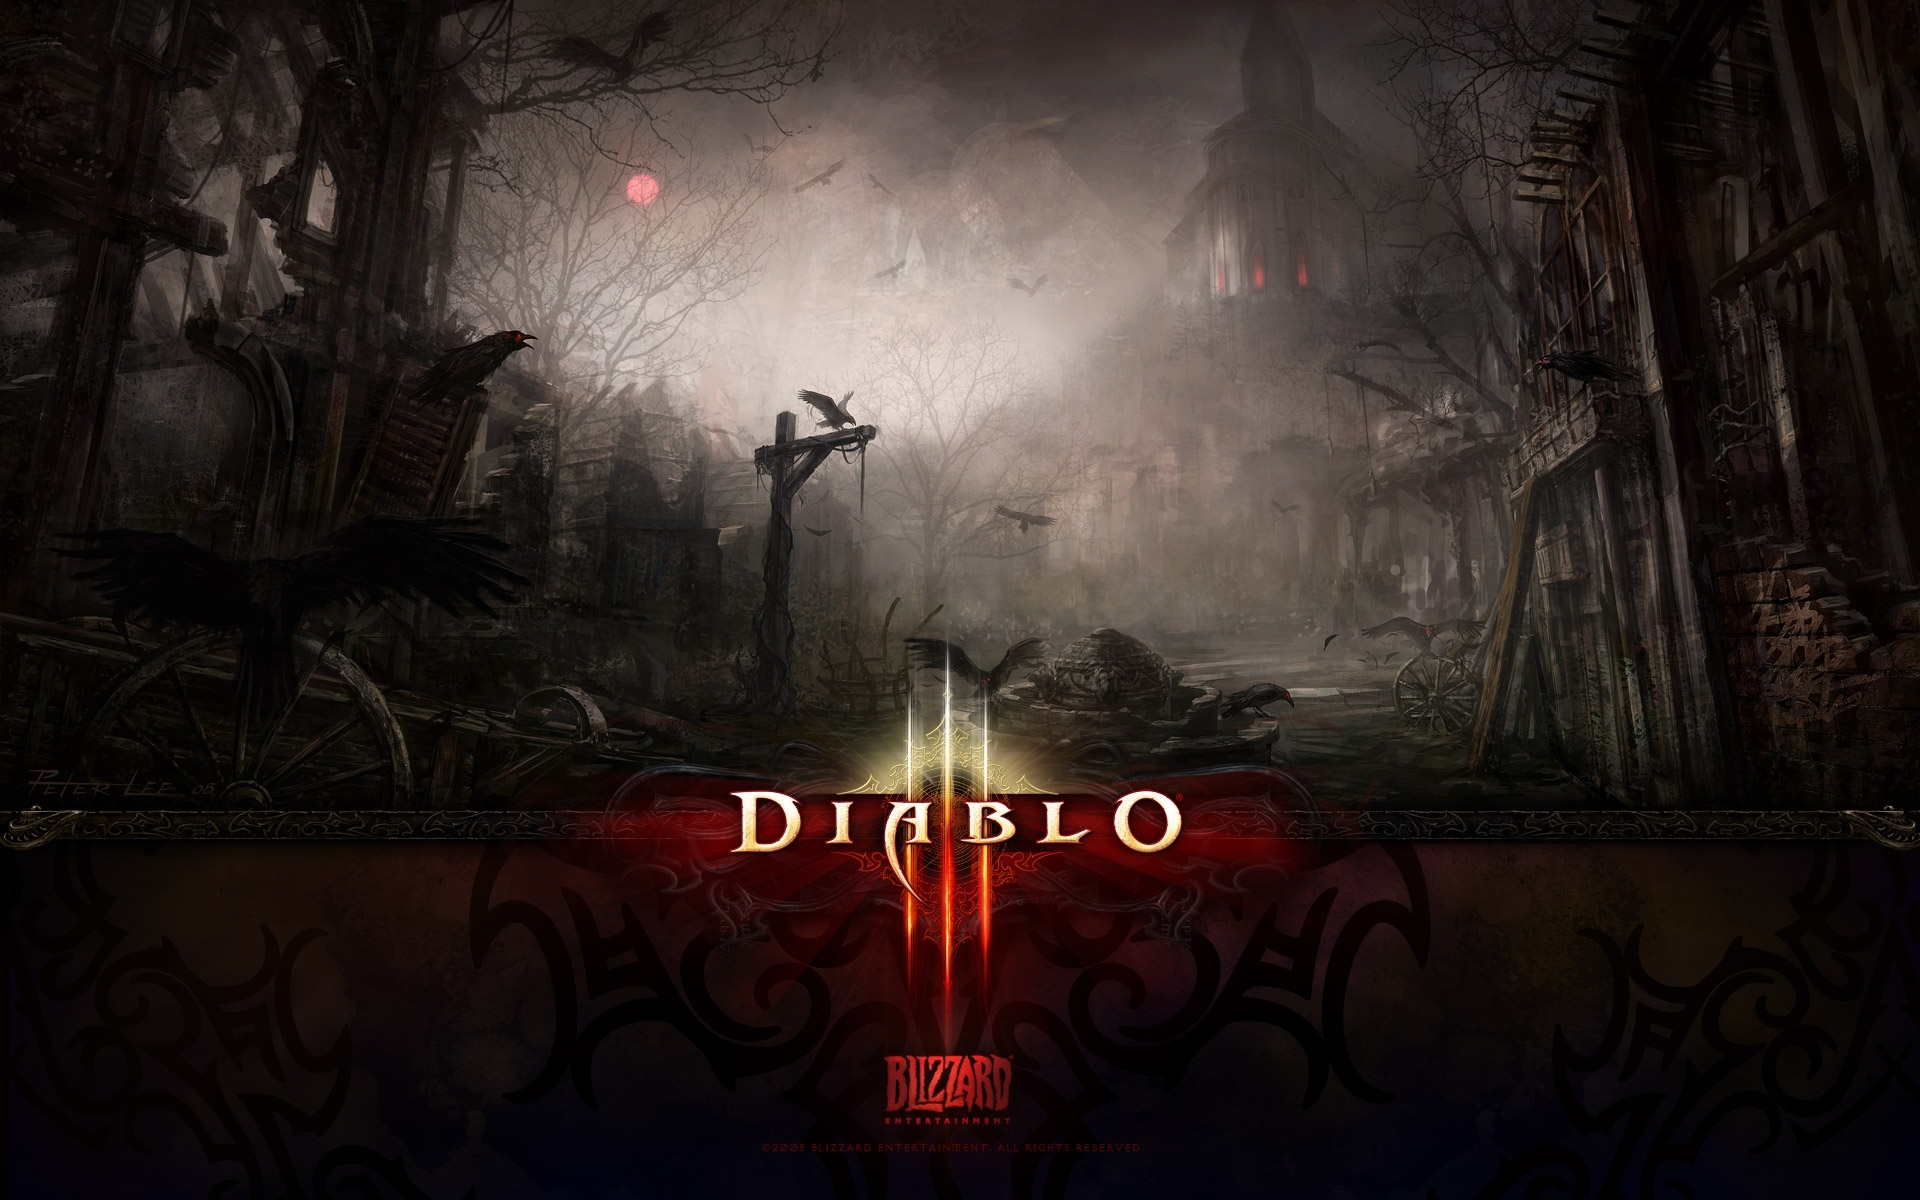 1080p Diablo Hd Images